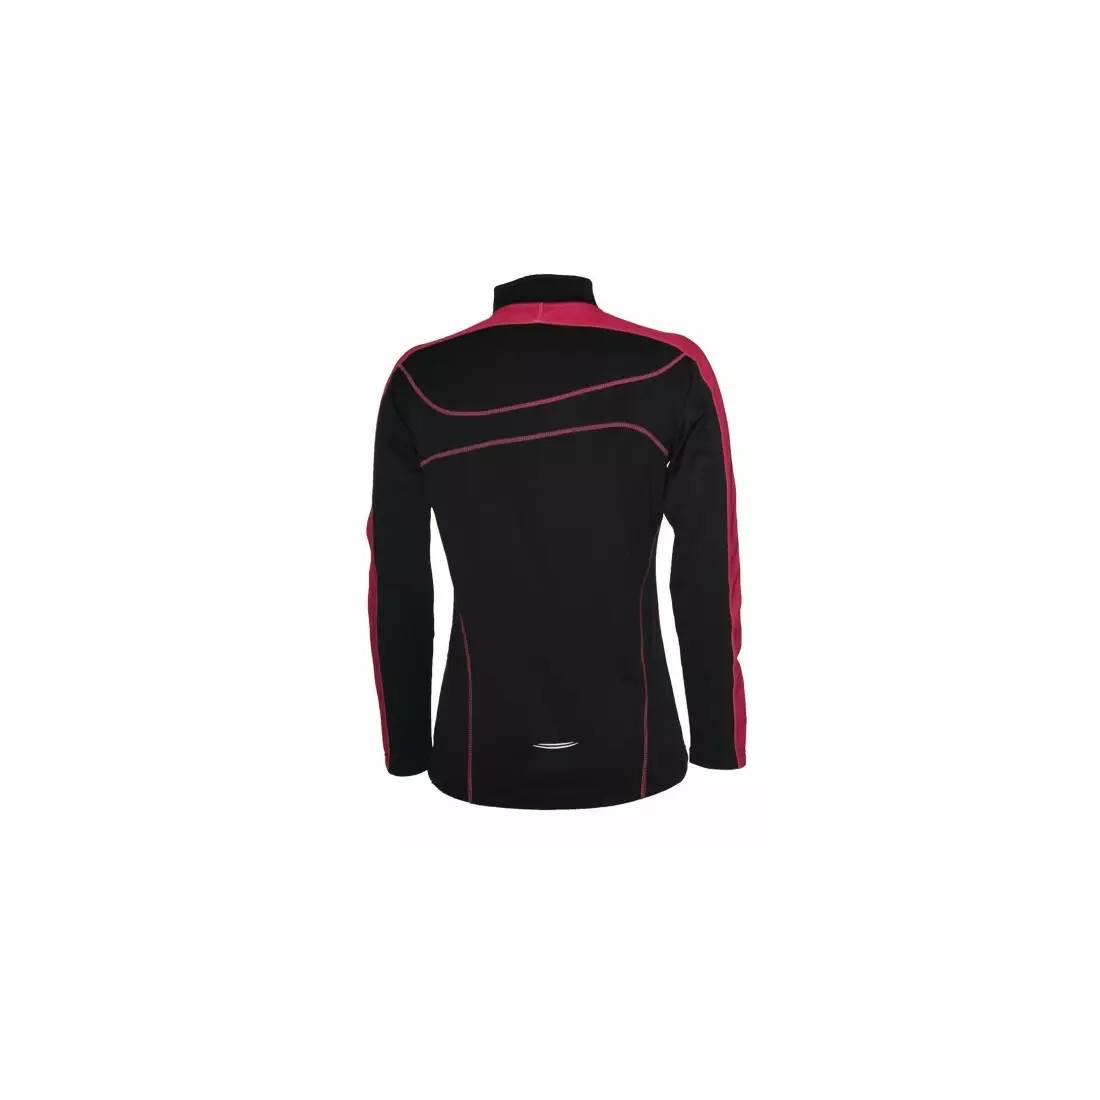 ROGELLI RUN MELS - dámská zateplená běžecká mikina - barva: Černá a růžová